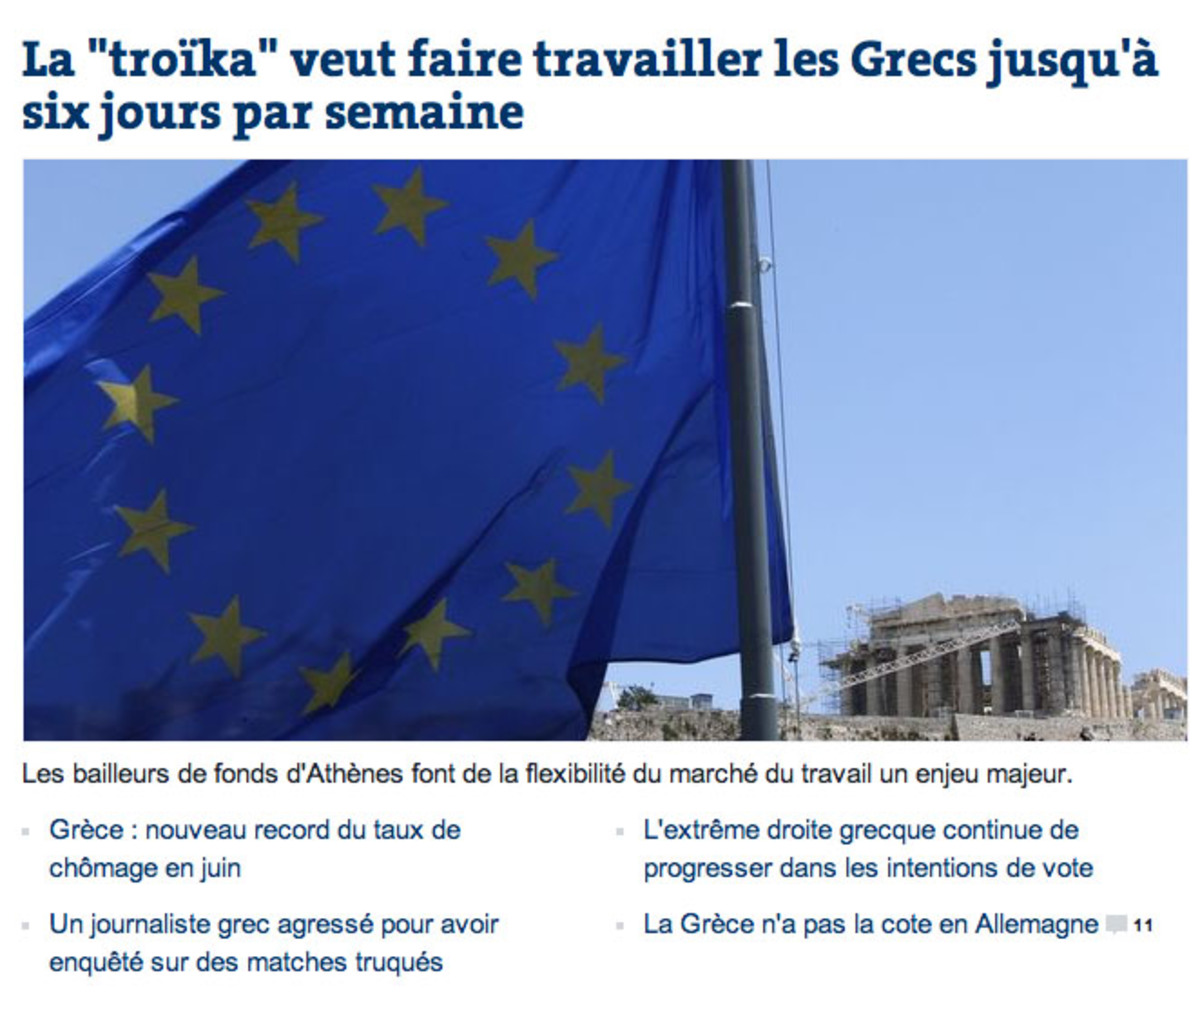 Πρώτο θέμα η Ελλάδα στη “Le Monde” – 6ήμερο, ανεργία και άνοδος της Χρυσής Αυγής